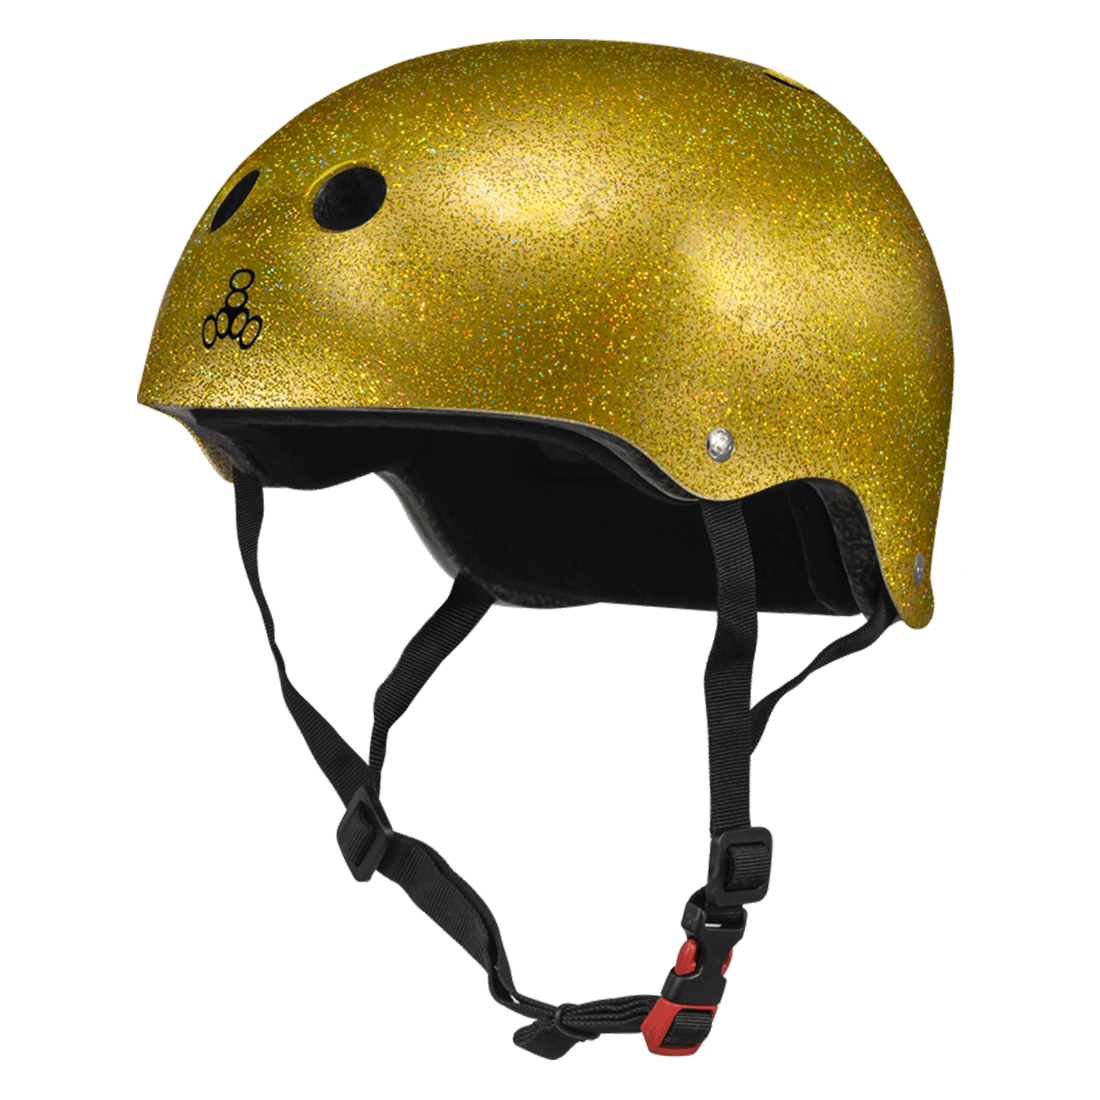 Triple 8 THE Cert SS Helmet - Gold Glitter Helmets